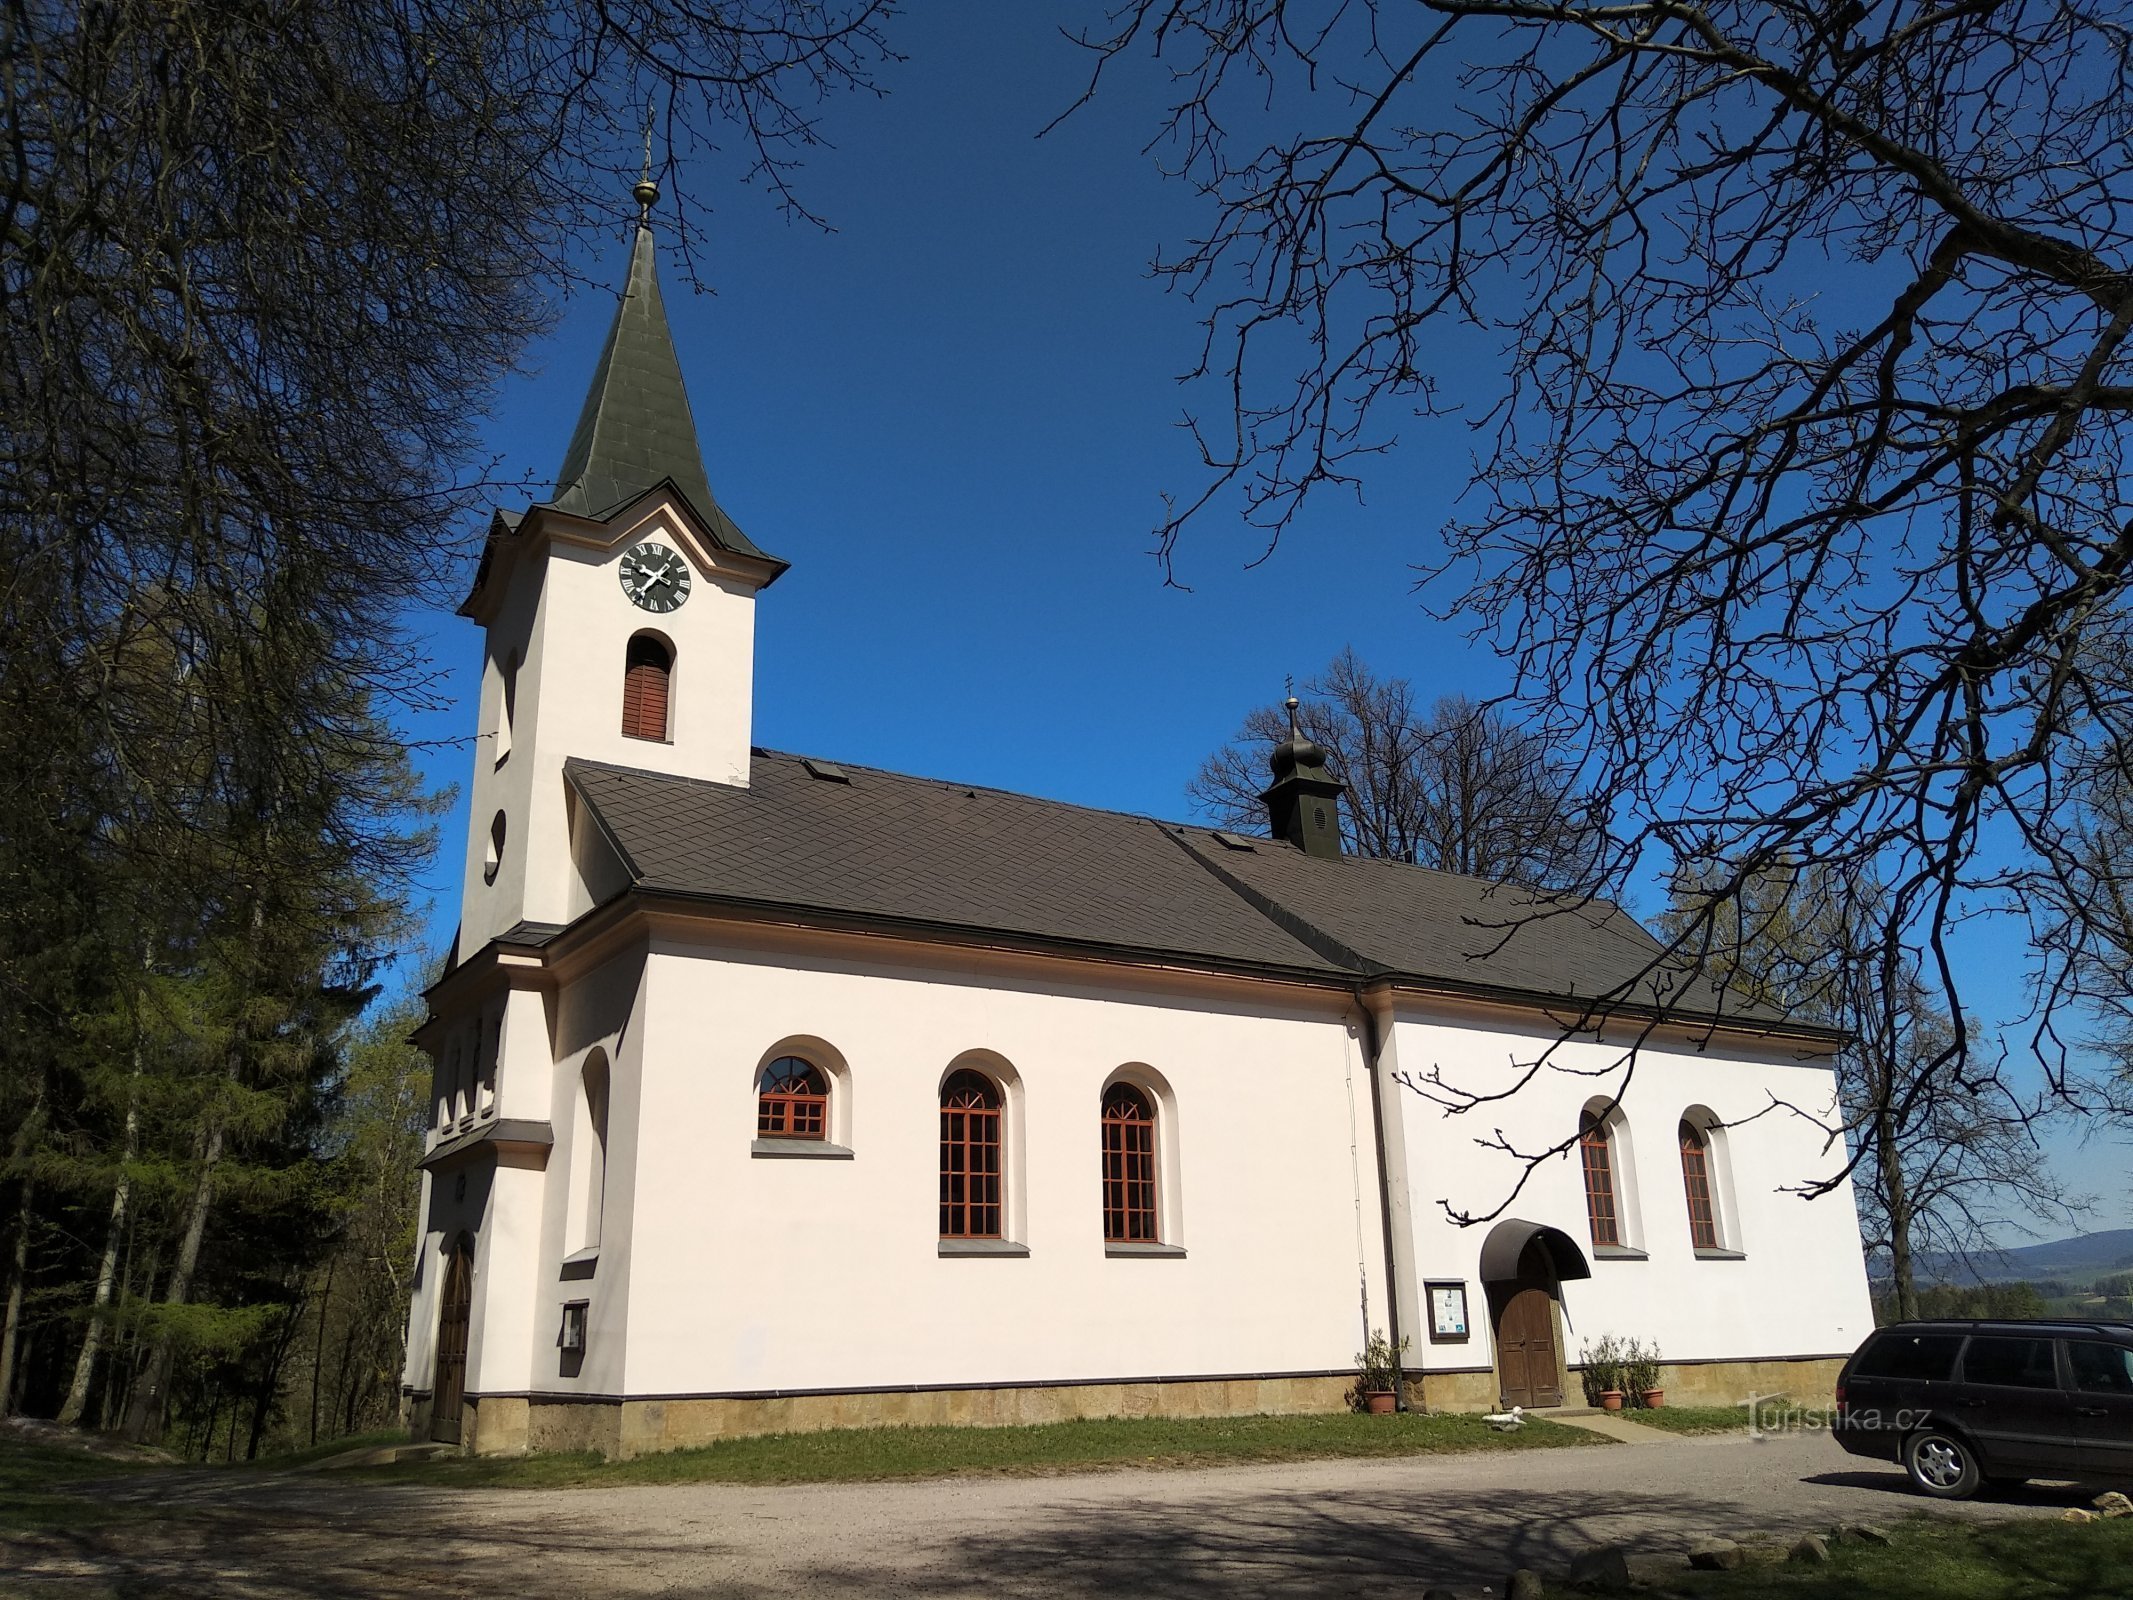 切伦斯卡圣母教堂